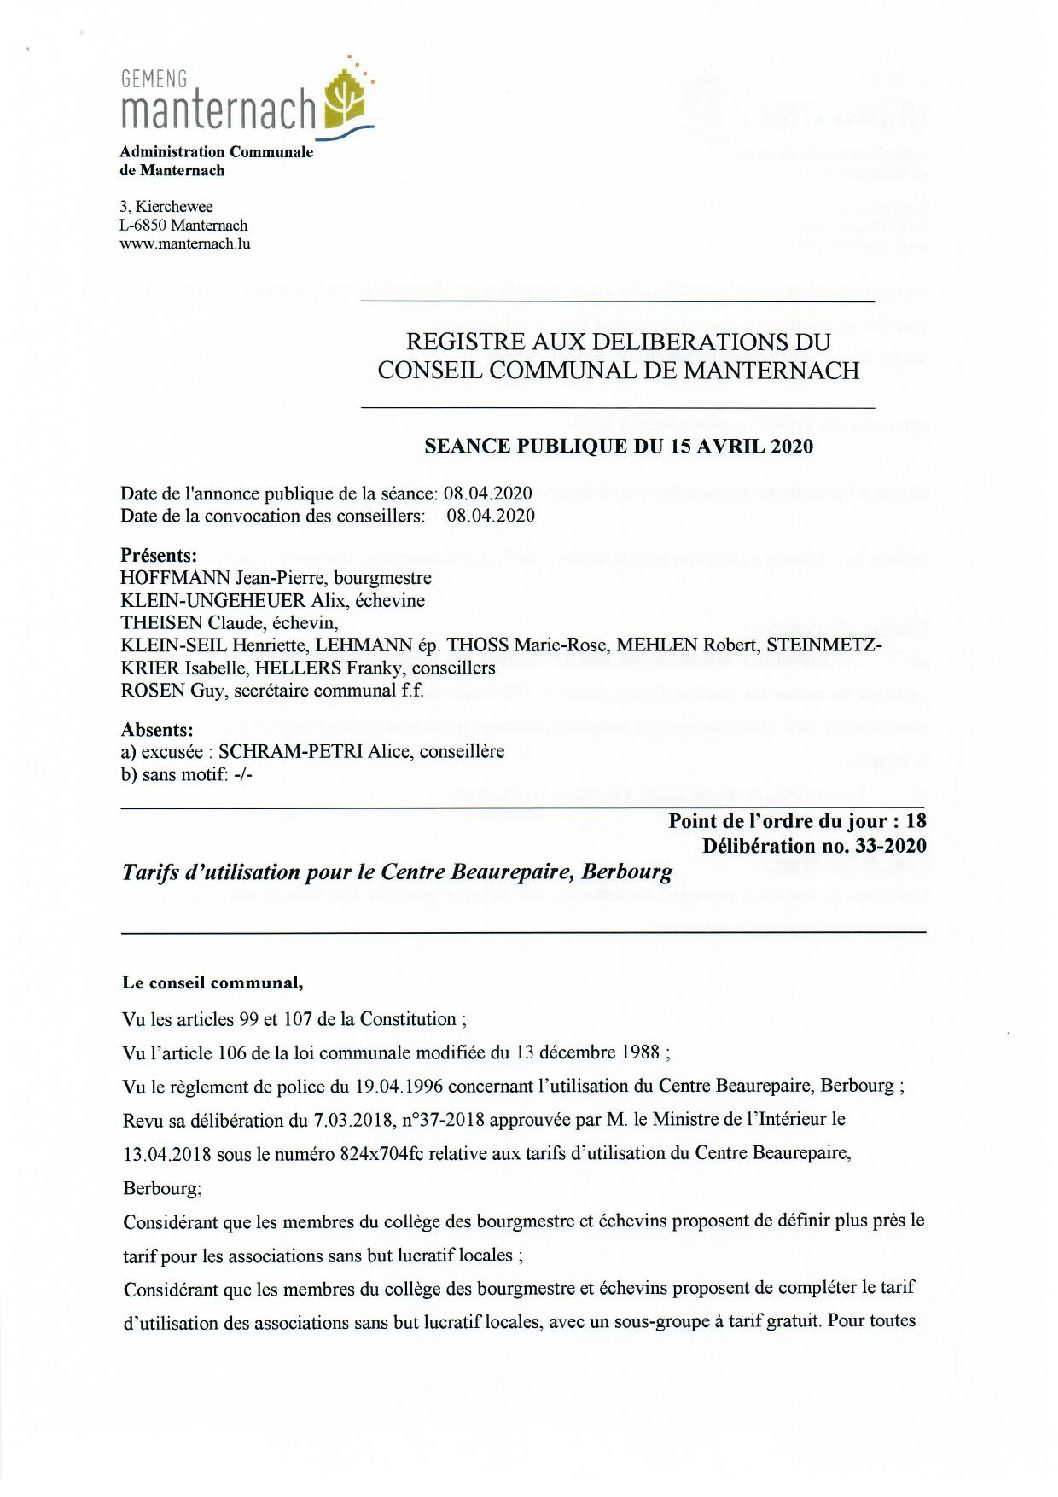 Centres culturels -Tarifs d'utilisation pour le Centre Beaurepaire à Berbourg 2020.04.15